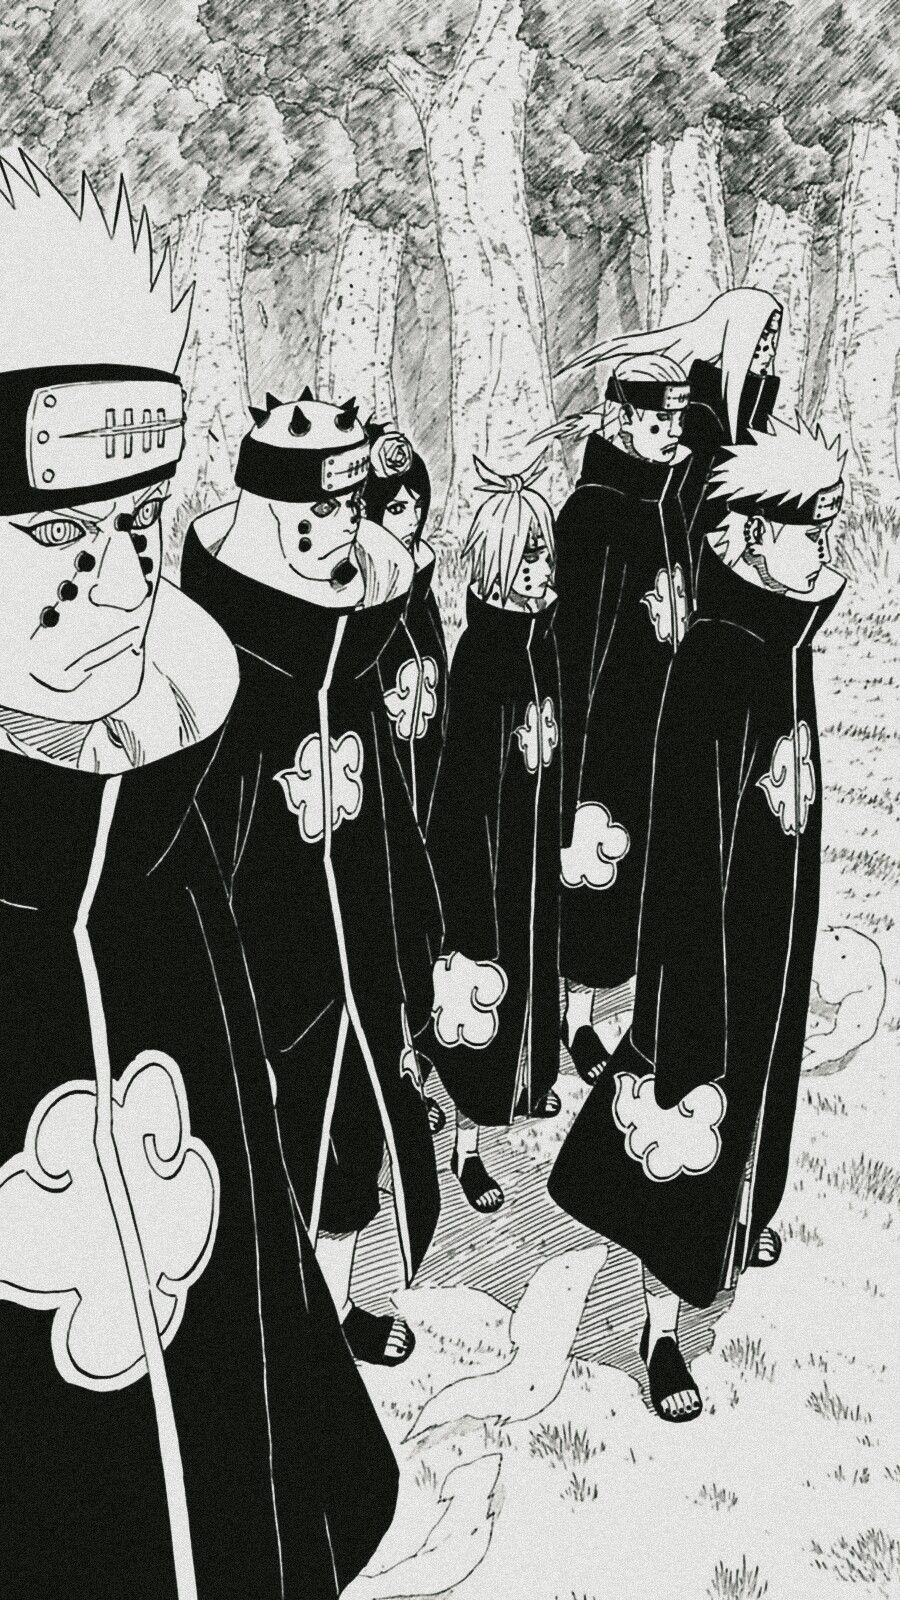 Naruto Manga Panels Wallpapers - Wallpaper Cave